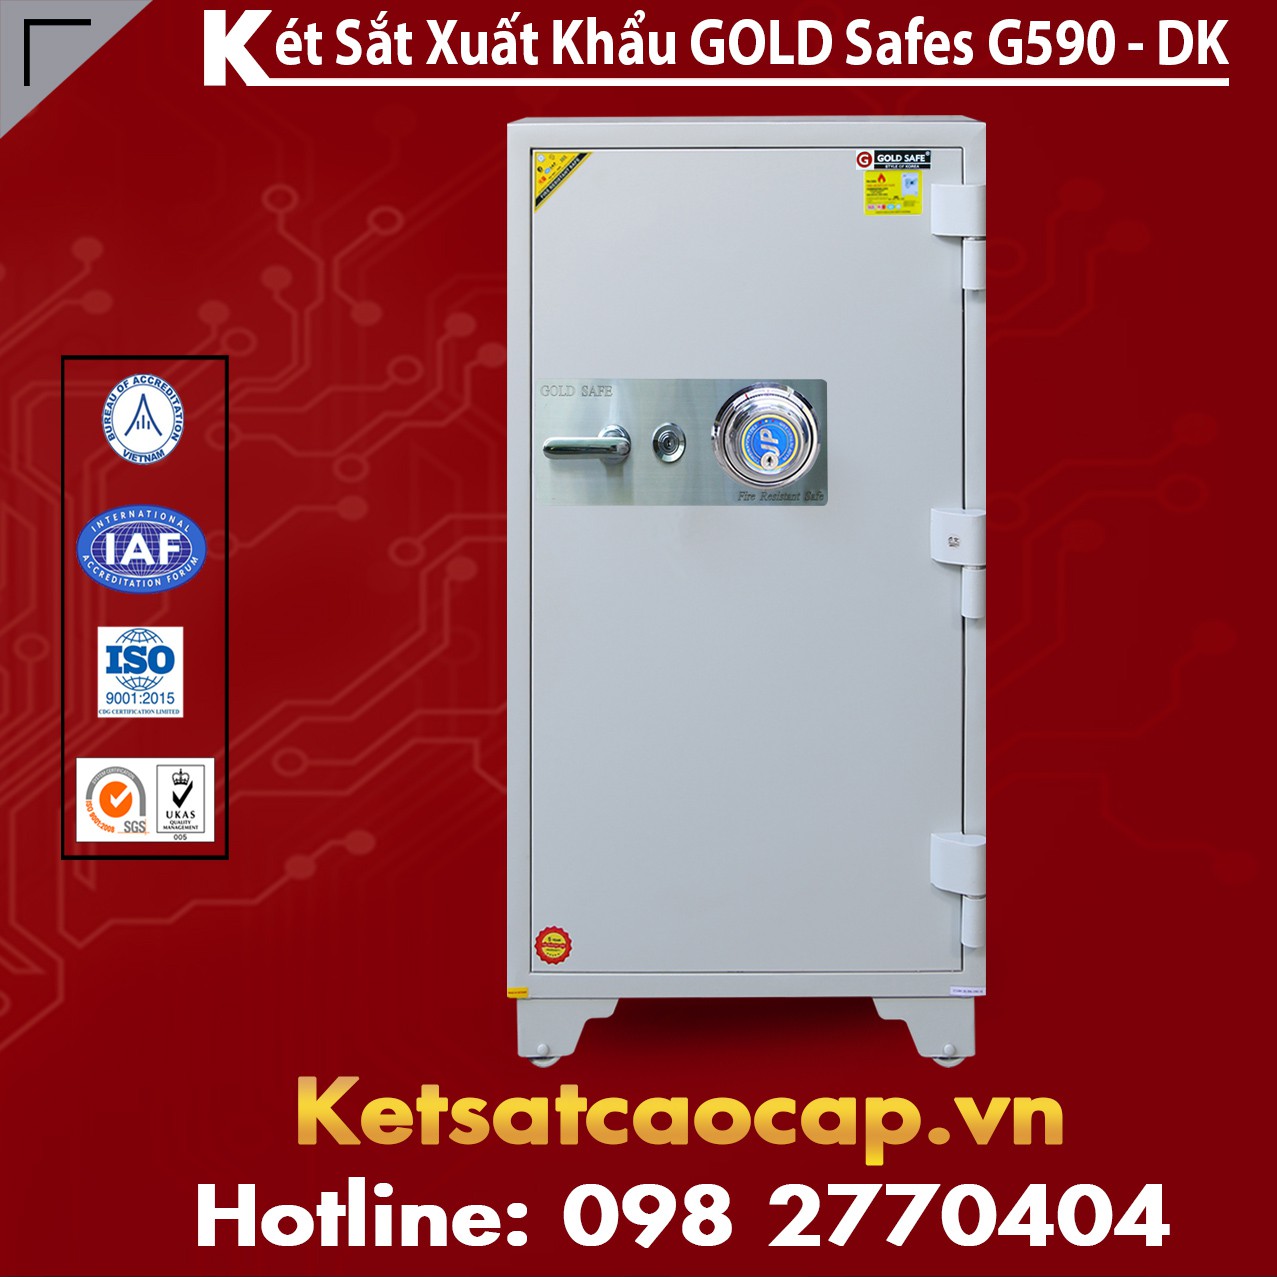 Két Sắt Phú Quý GOLD SAFES GC590 DK White